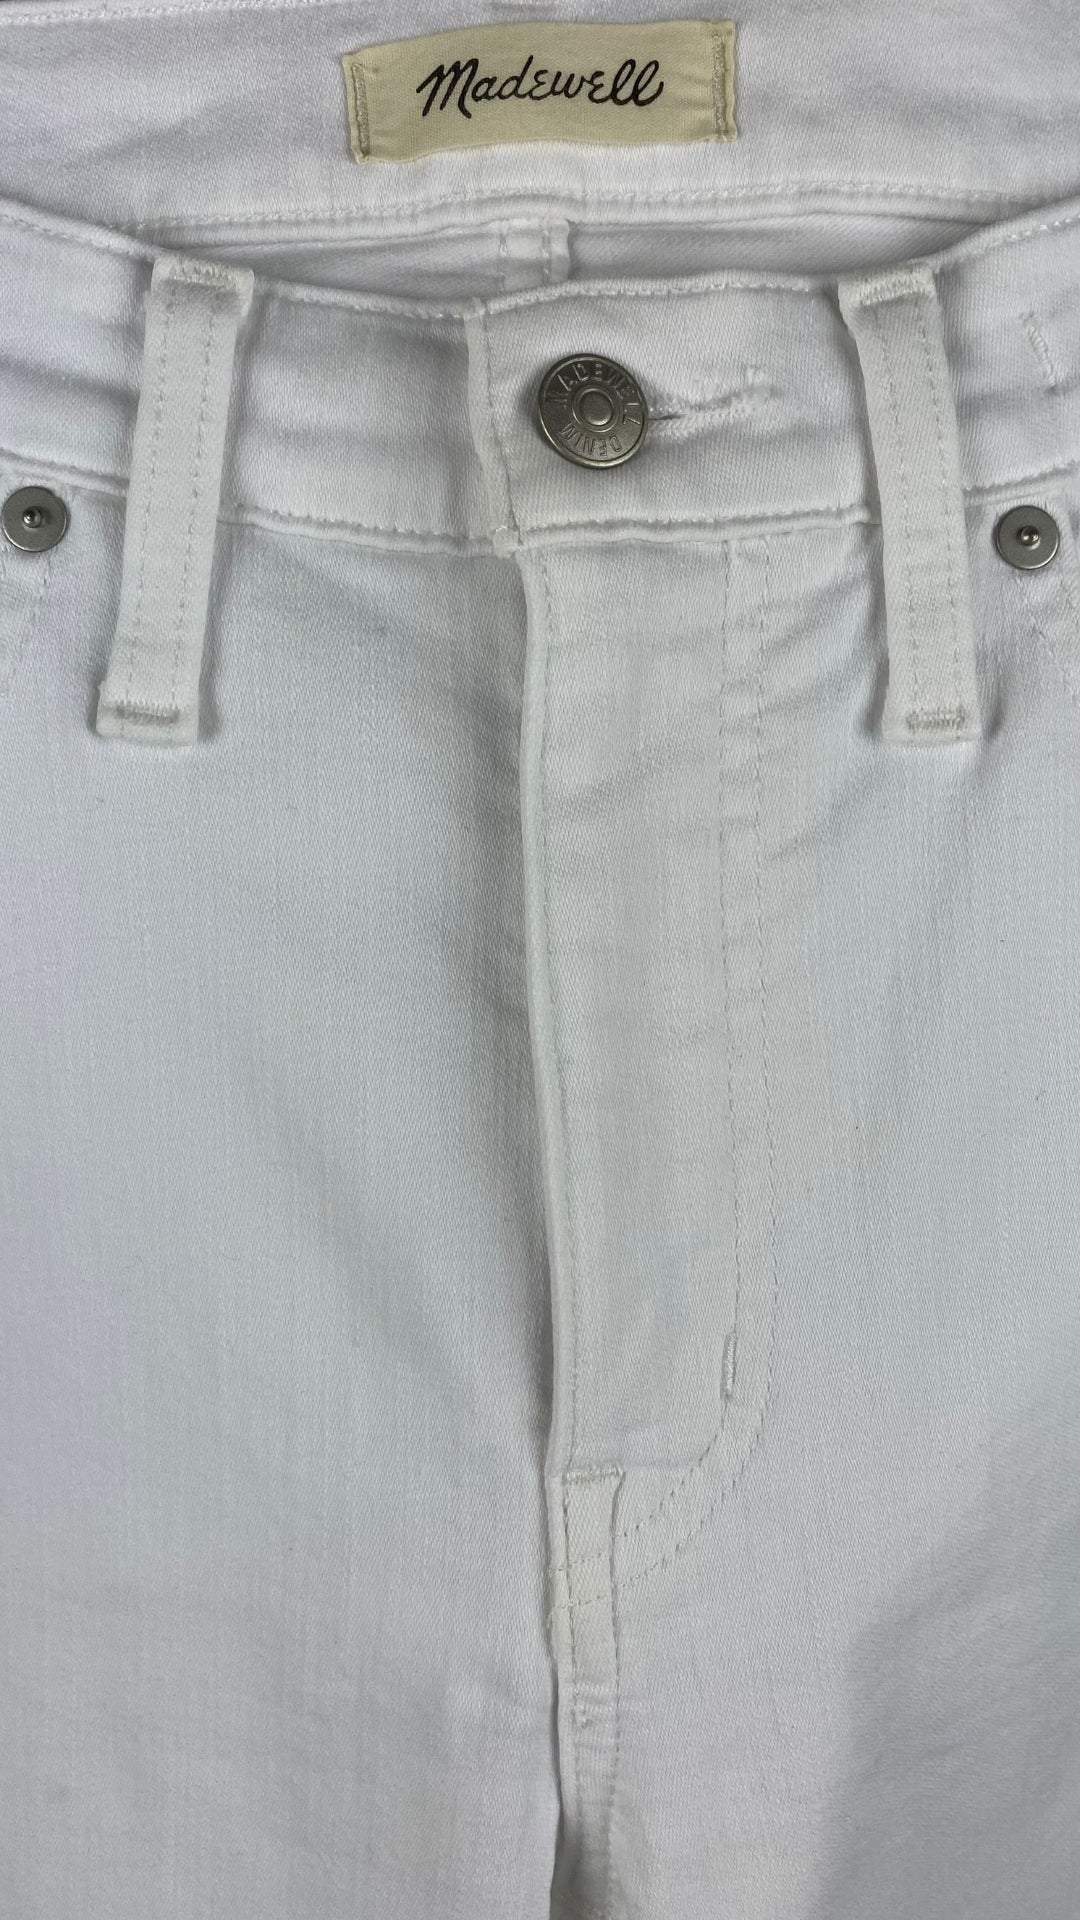 Pantalon blanc légèrement évasé Madewell, taille 28. Vue de la taille.